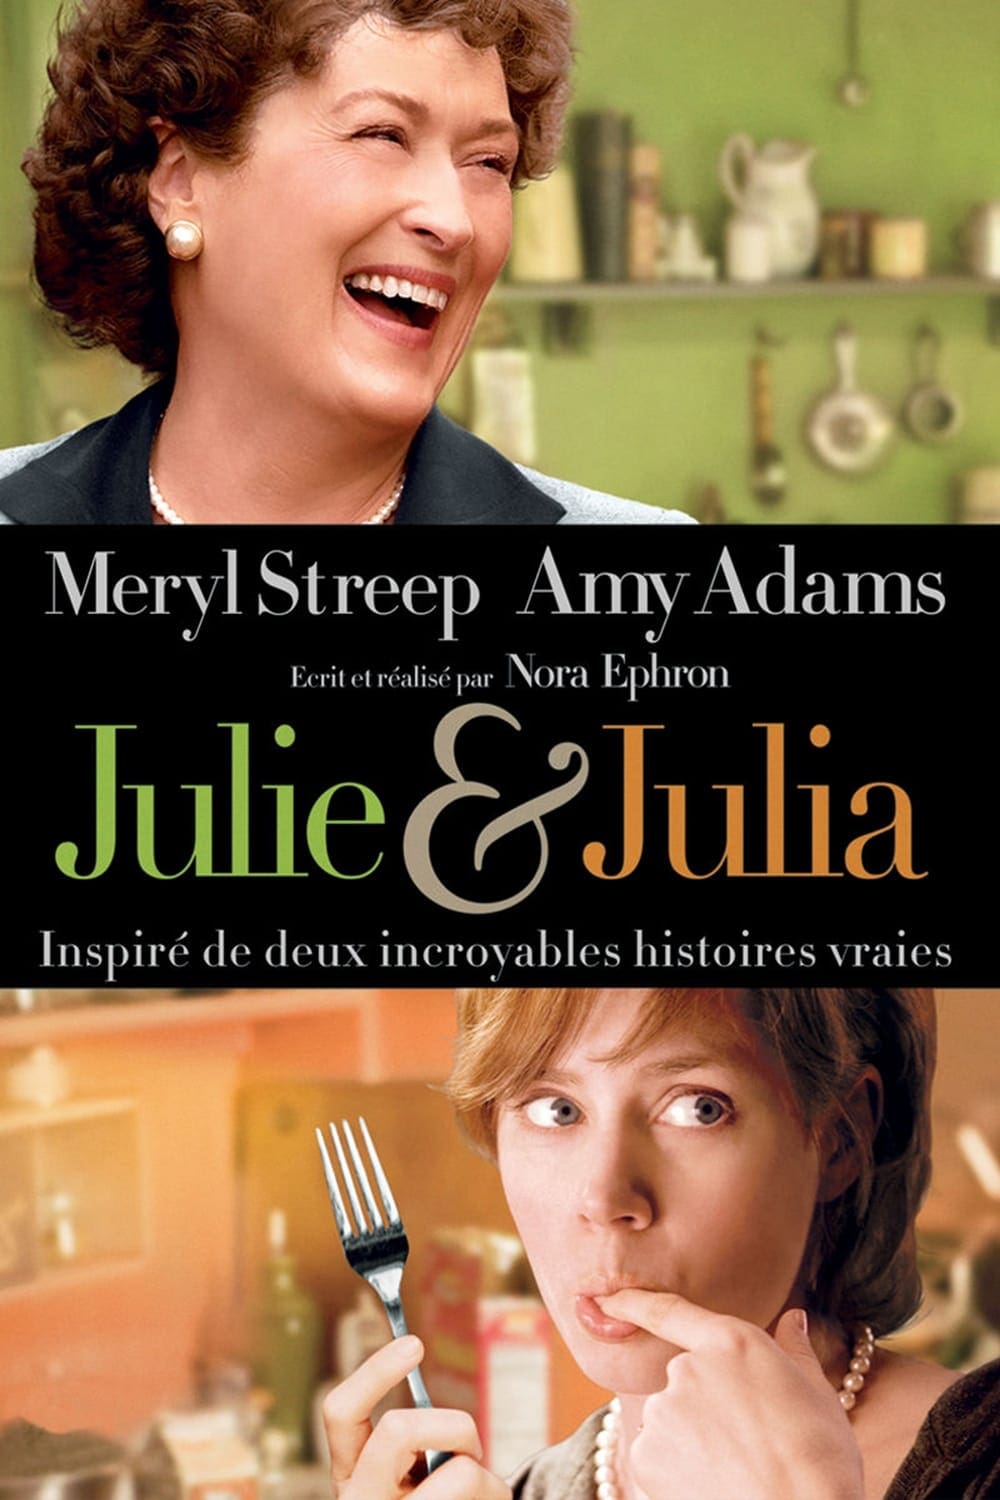 Julie & Julia est-il disponible sur Netflix ou autre ?